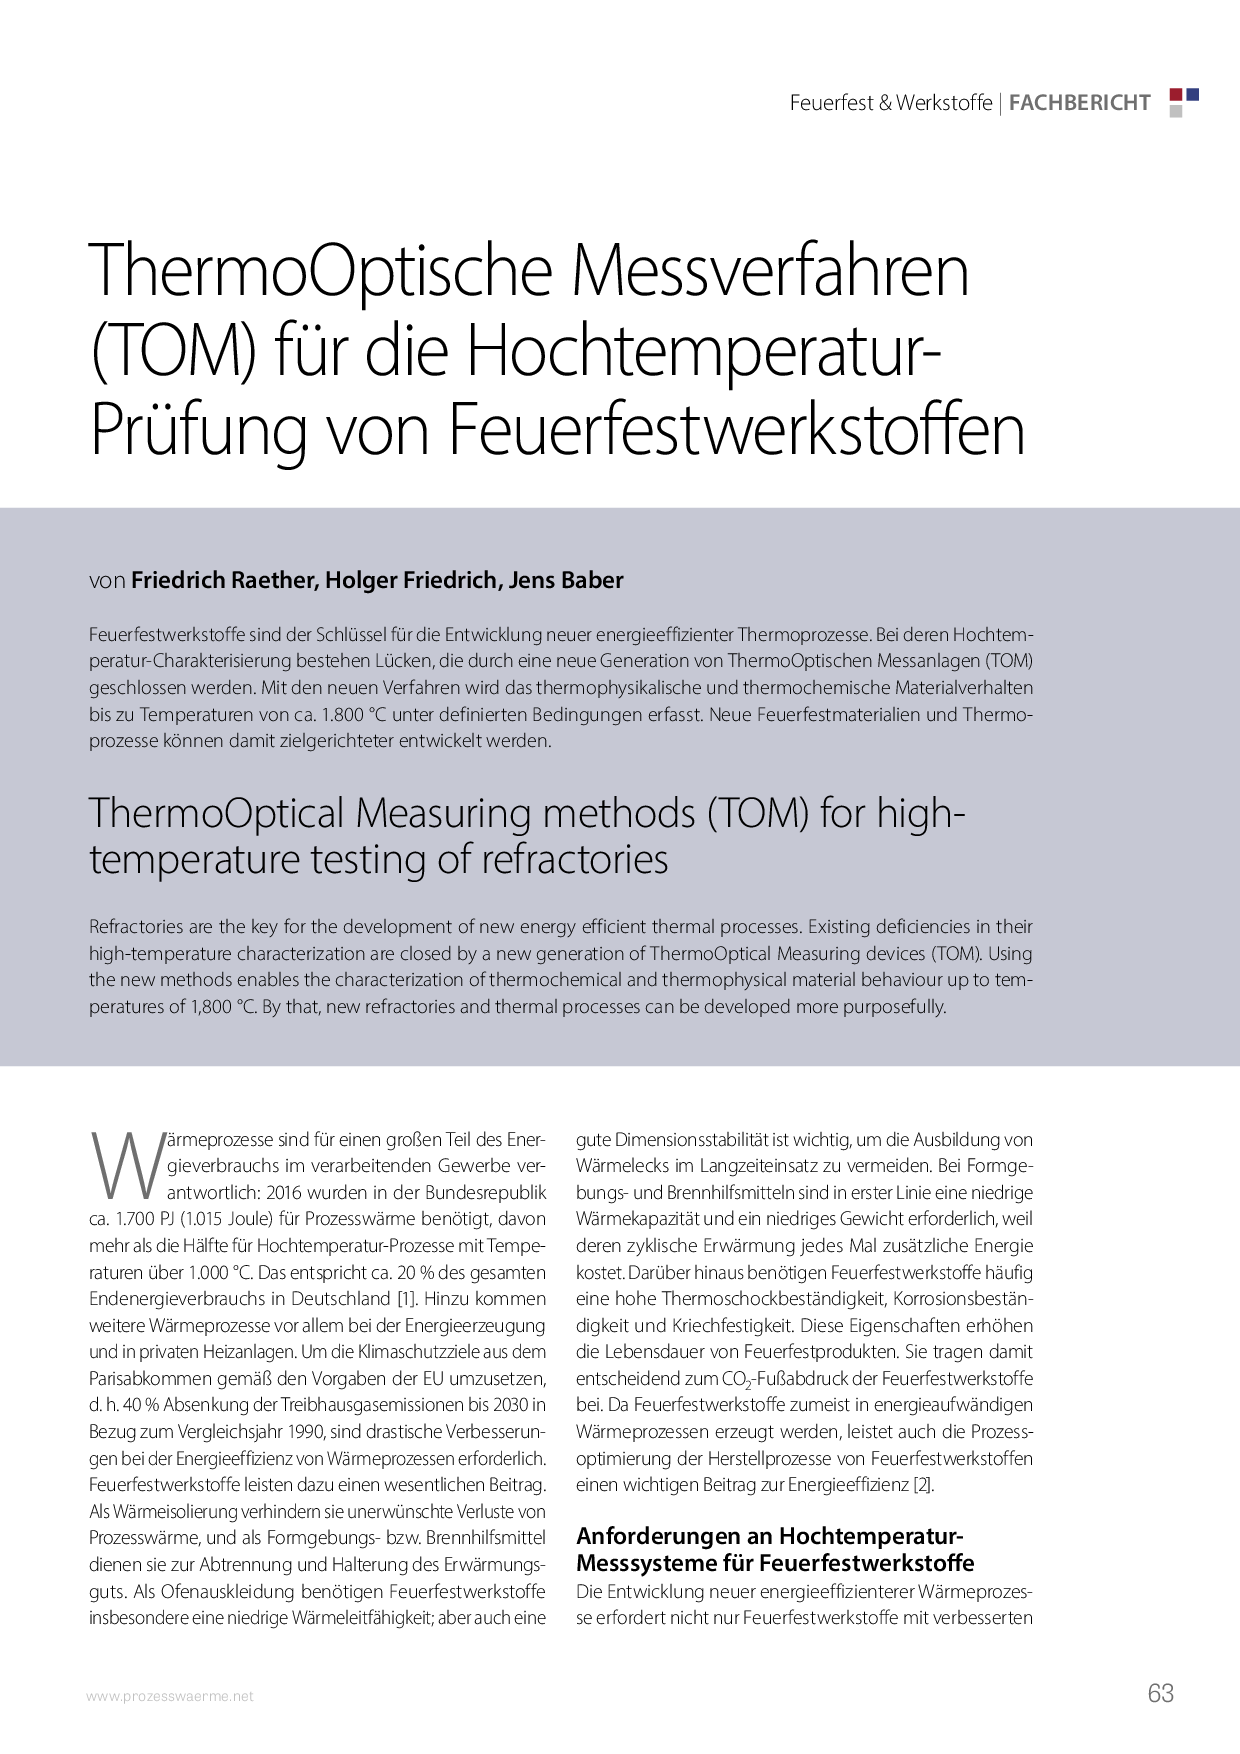 ThermoOptische Messverfahren (TOM) für die Hochtemperatur-Prüfung von Feuerfestwerkstoffen